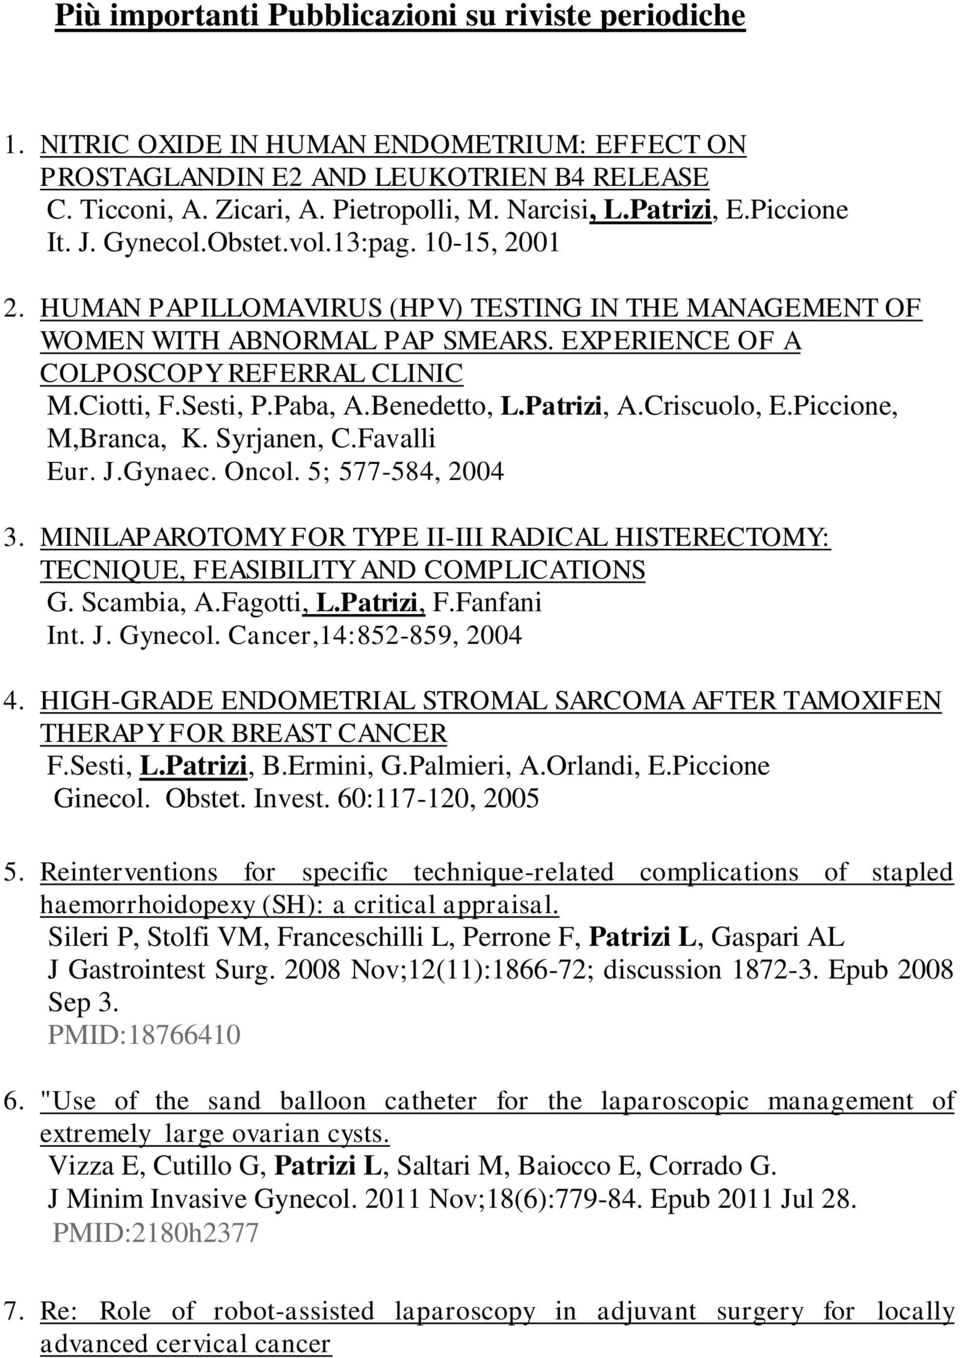 EXPERIENCE OF A COLPOSCOPY REFERRAL CLINIC M.Ciotti, F.Sesti, P.Paba, A.Benedetto, L.Patrizi, A.Criscuolo, E.Piccione, M,Branca, K. Syrjanen, C.Favalli Eur. J.Gynaec. Oncol. 5; 577-584, 2004 3.